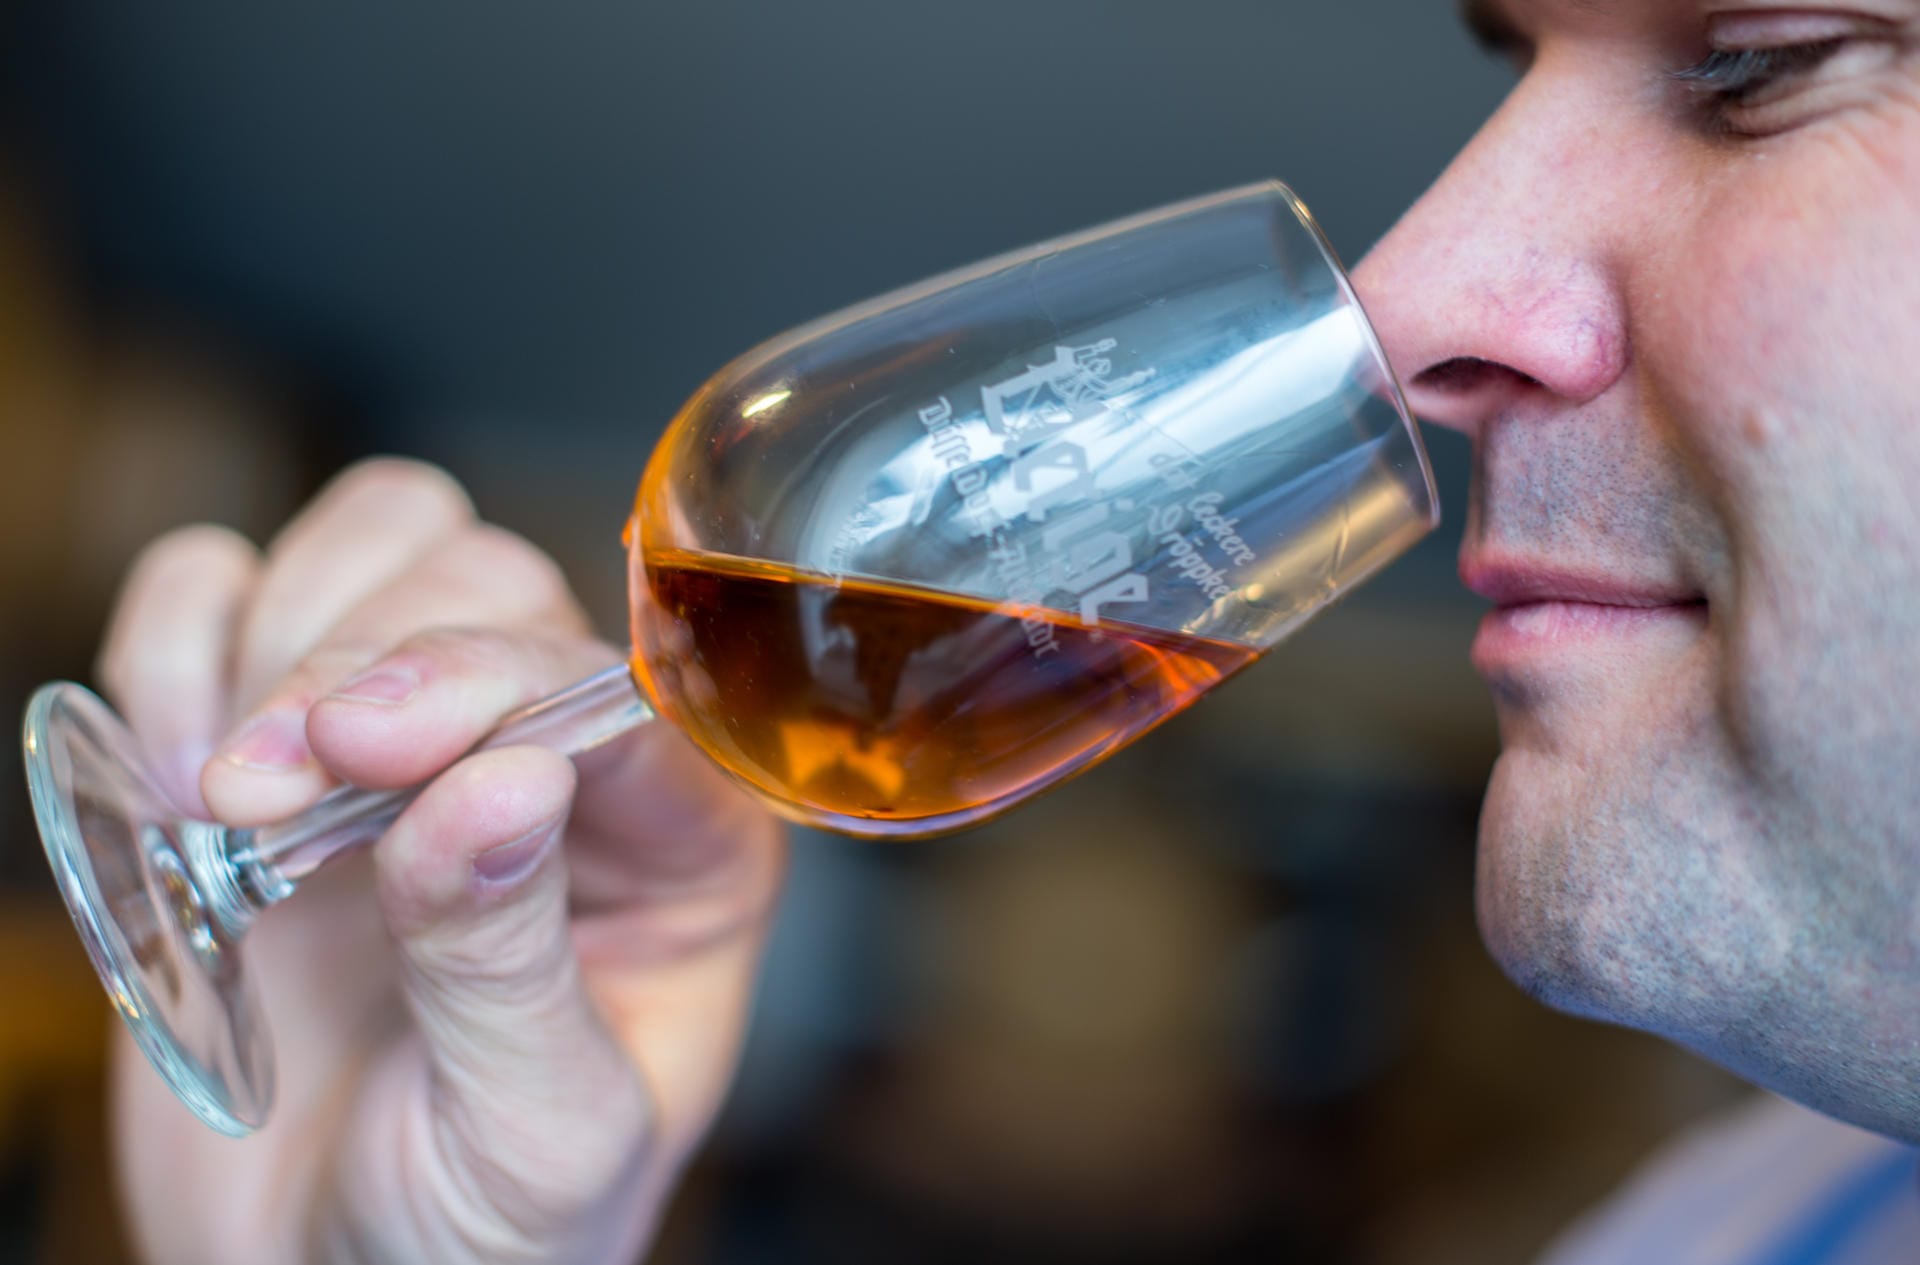 Das Verkosten von Whisky ähnelt einer guten Weinprobe. Halten Sie das Glas gegen das Licht, um die Farbe zu prüfen. Dann sollten Sie sich ausführlich dem Geruch widmen.